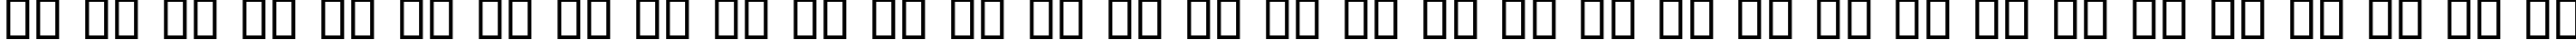 Пример написания русского алфавита шрифтом Olde English Regular